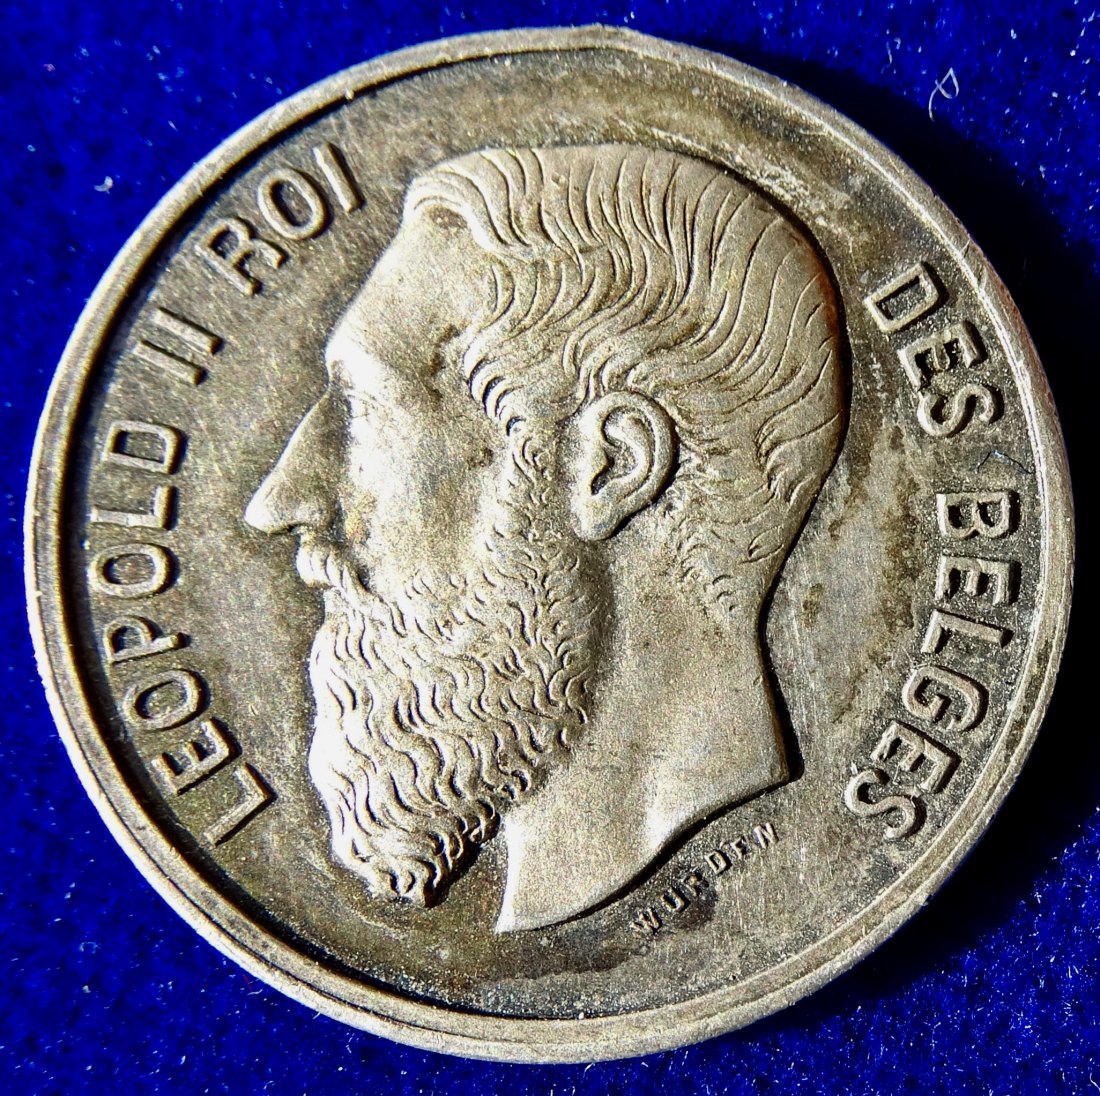  Belgien, Rotes Kreuz Medaille 1870 im Deutsch-Französischen Krieg, Medicina in Nummis   